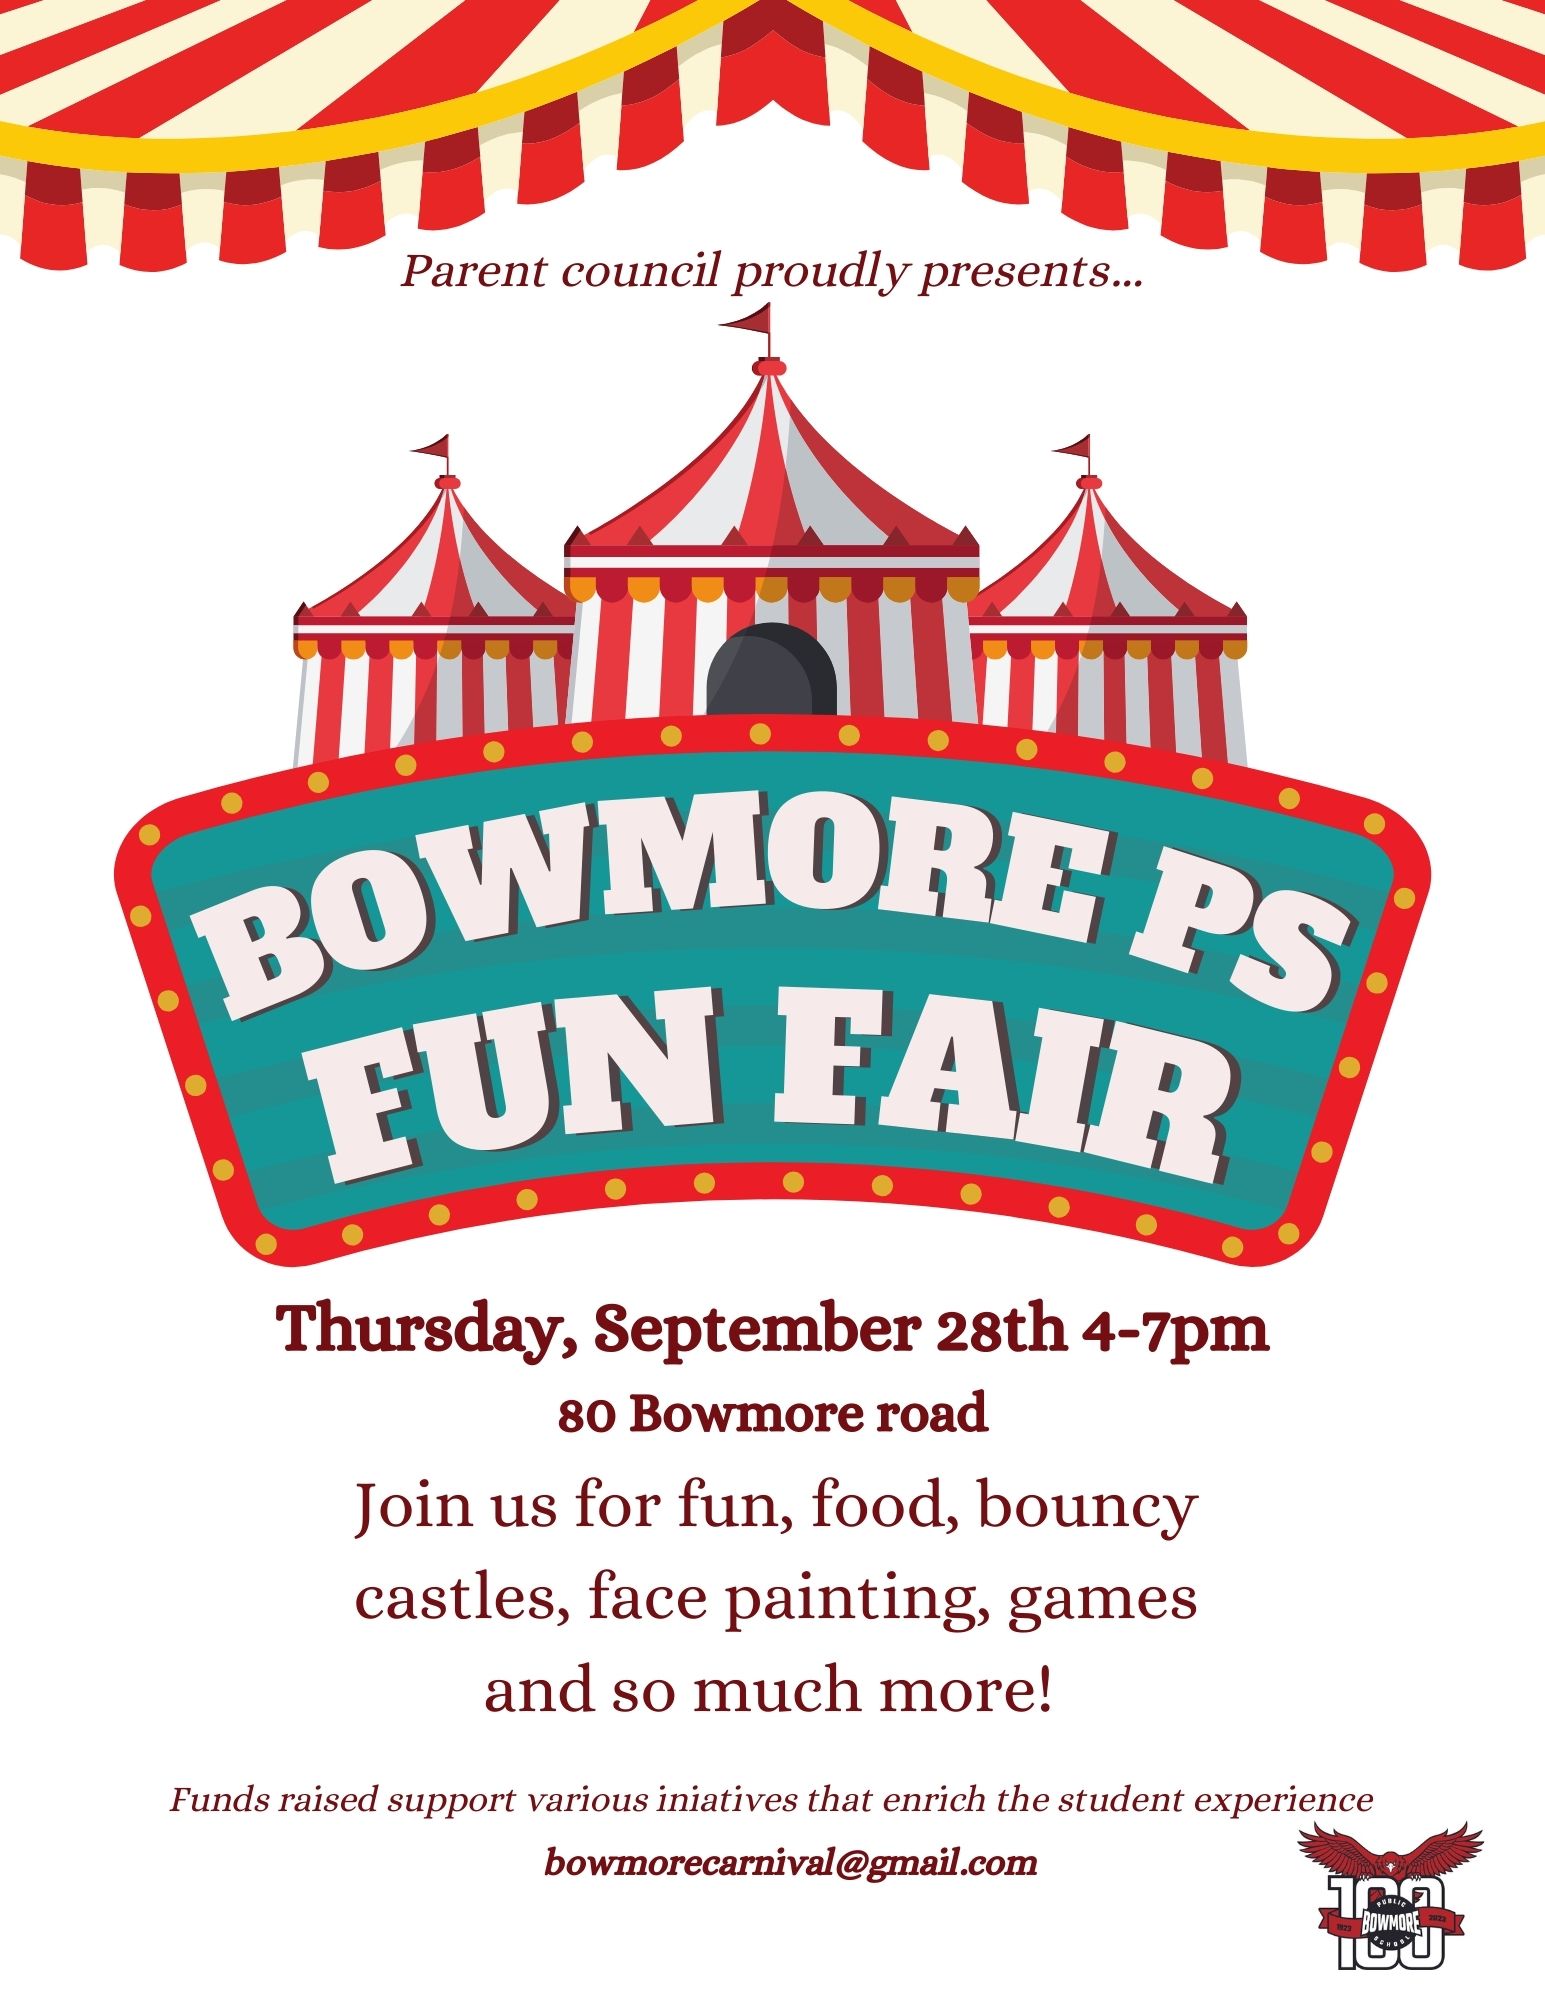 Bowmore Carnival Fun Fair Email